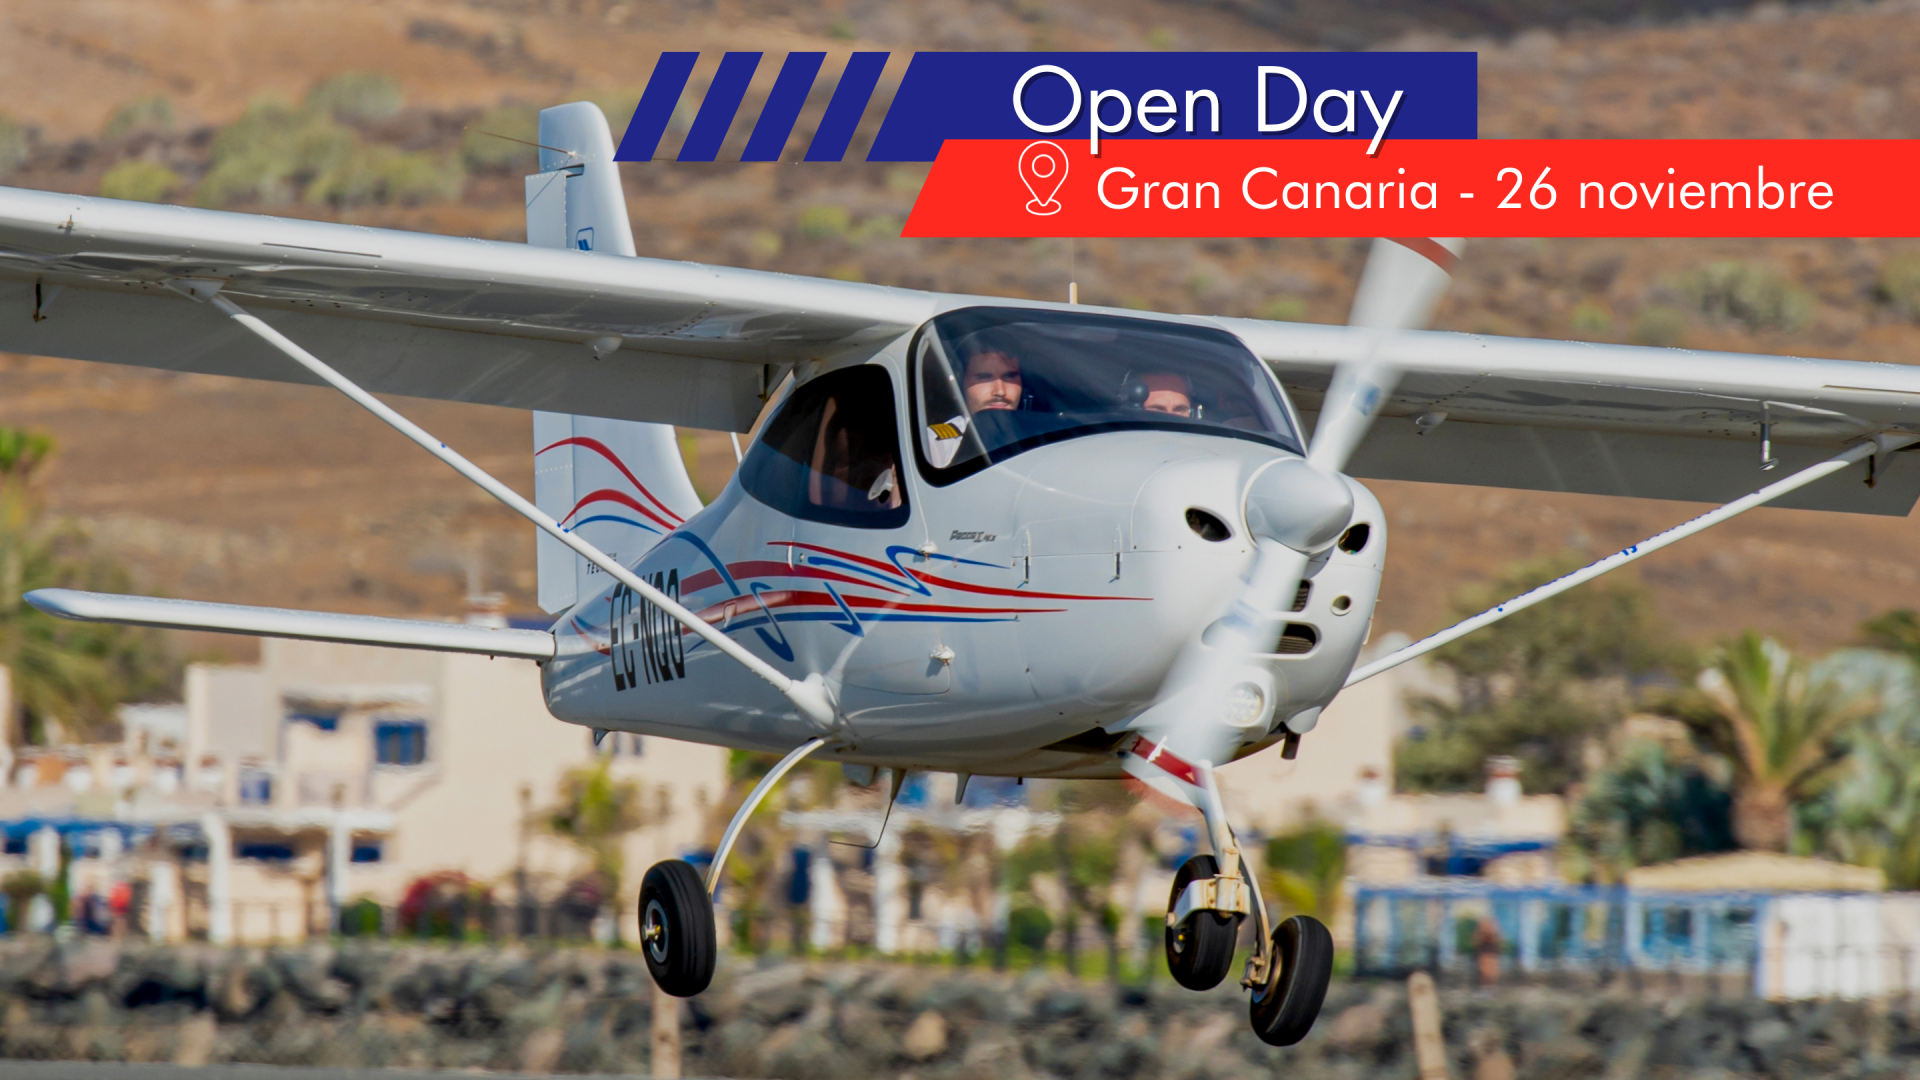 Open day - Gran Canaria November 26th